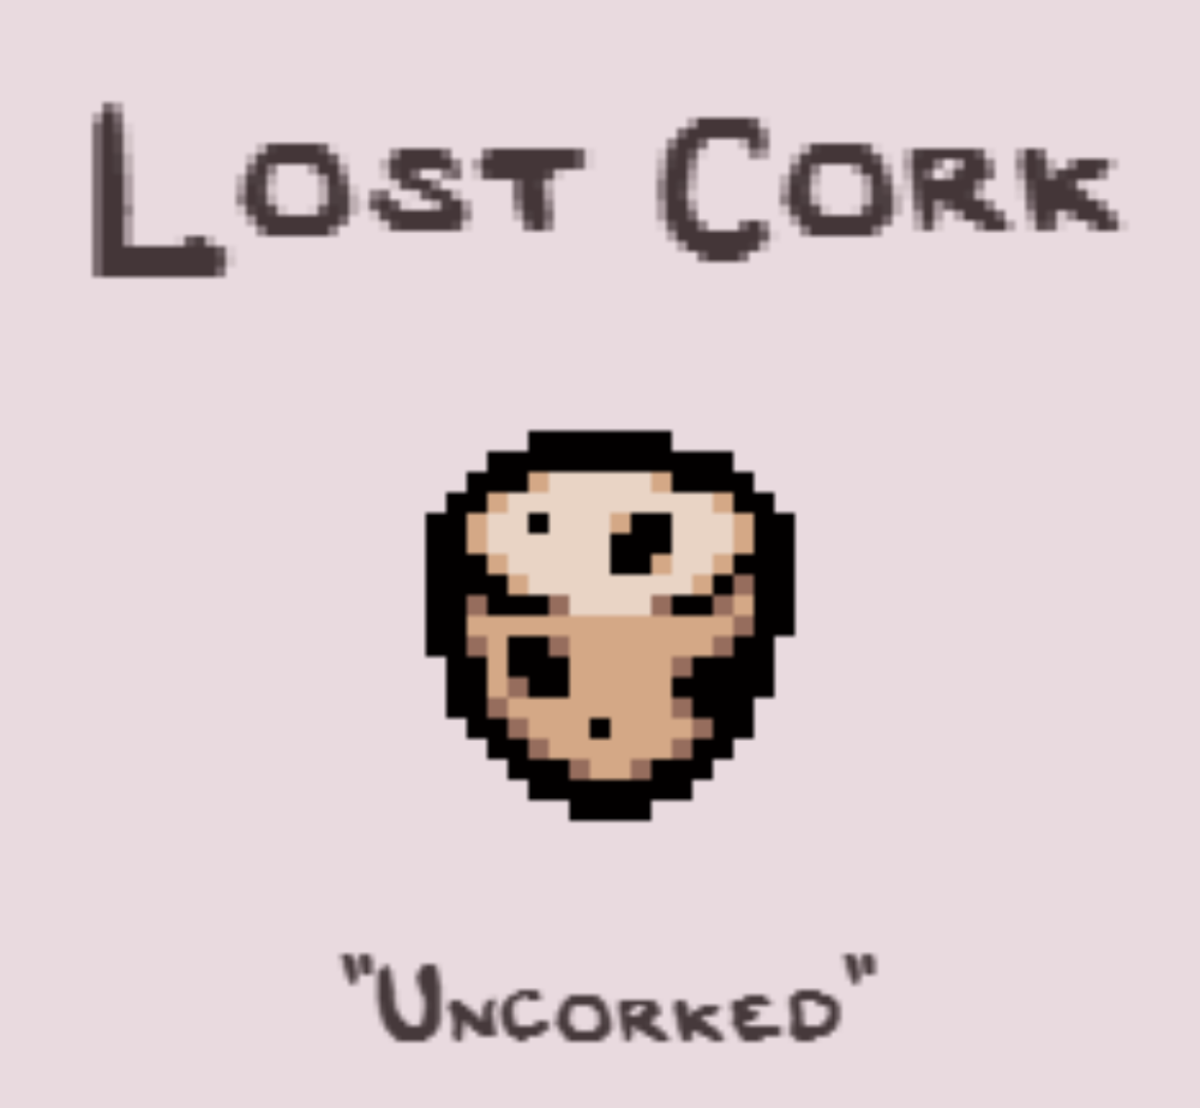 Lost Cork